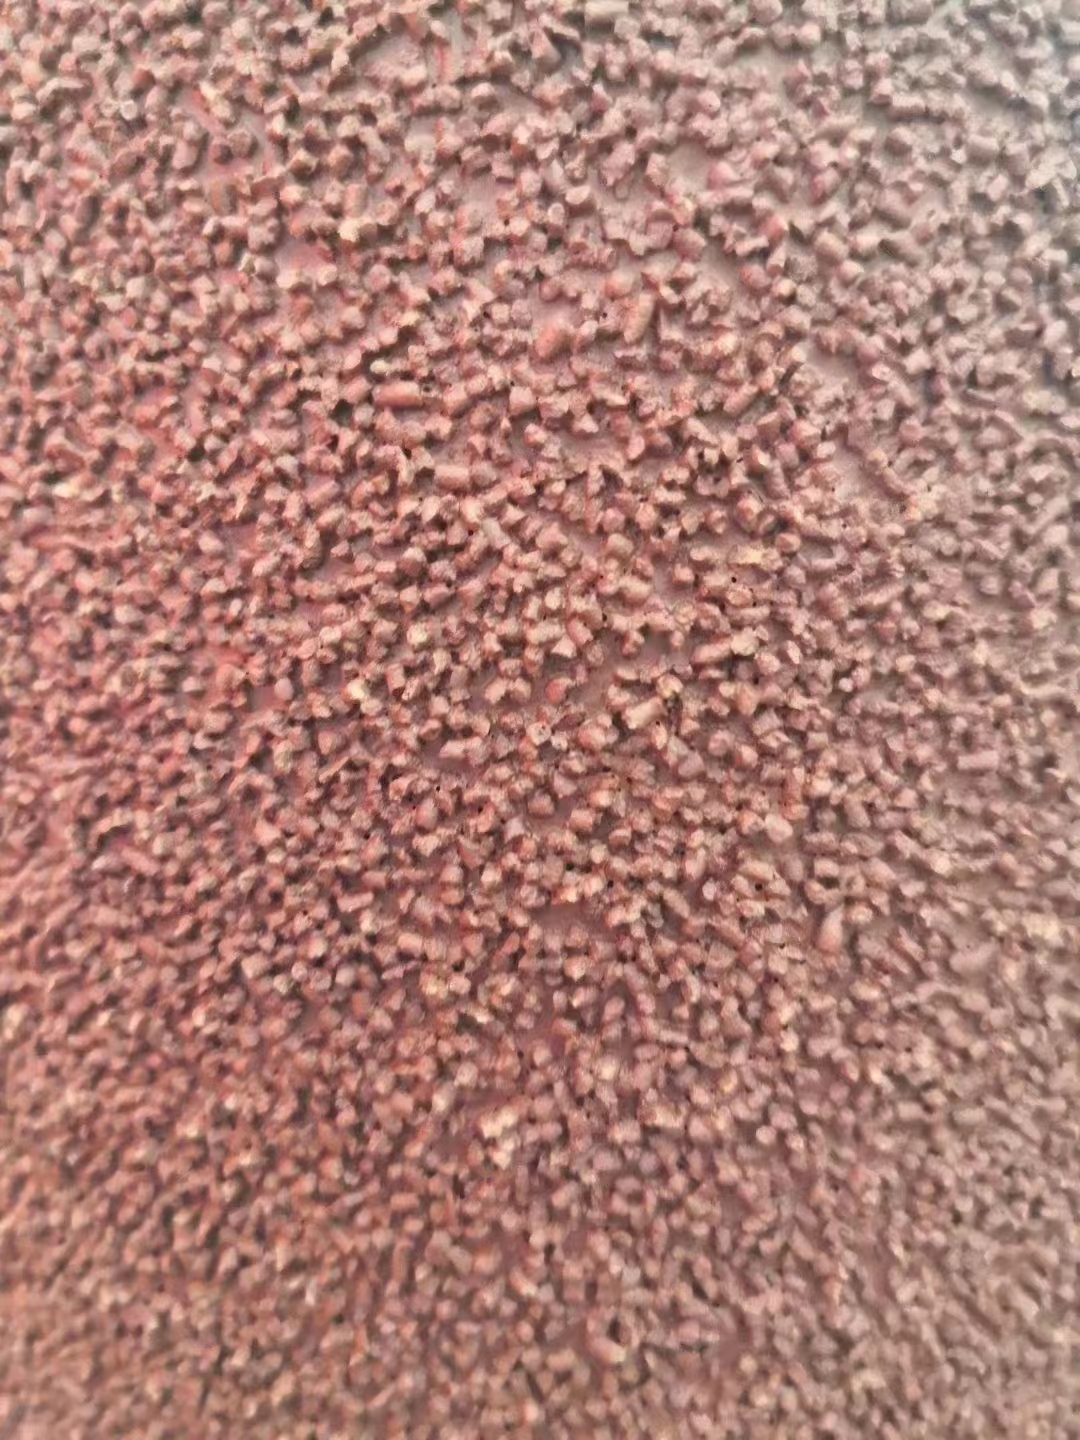 堆积磨料砂带与普通砂带的区别